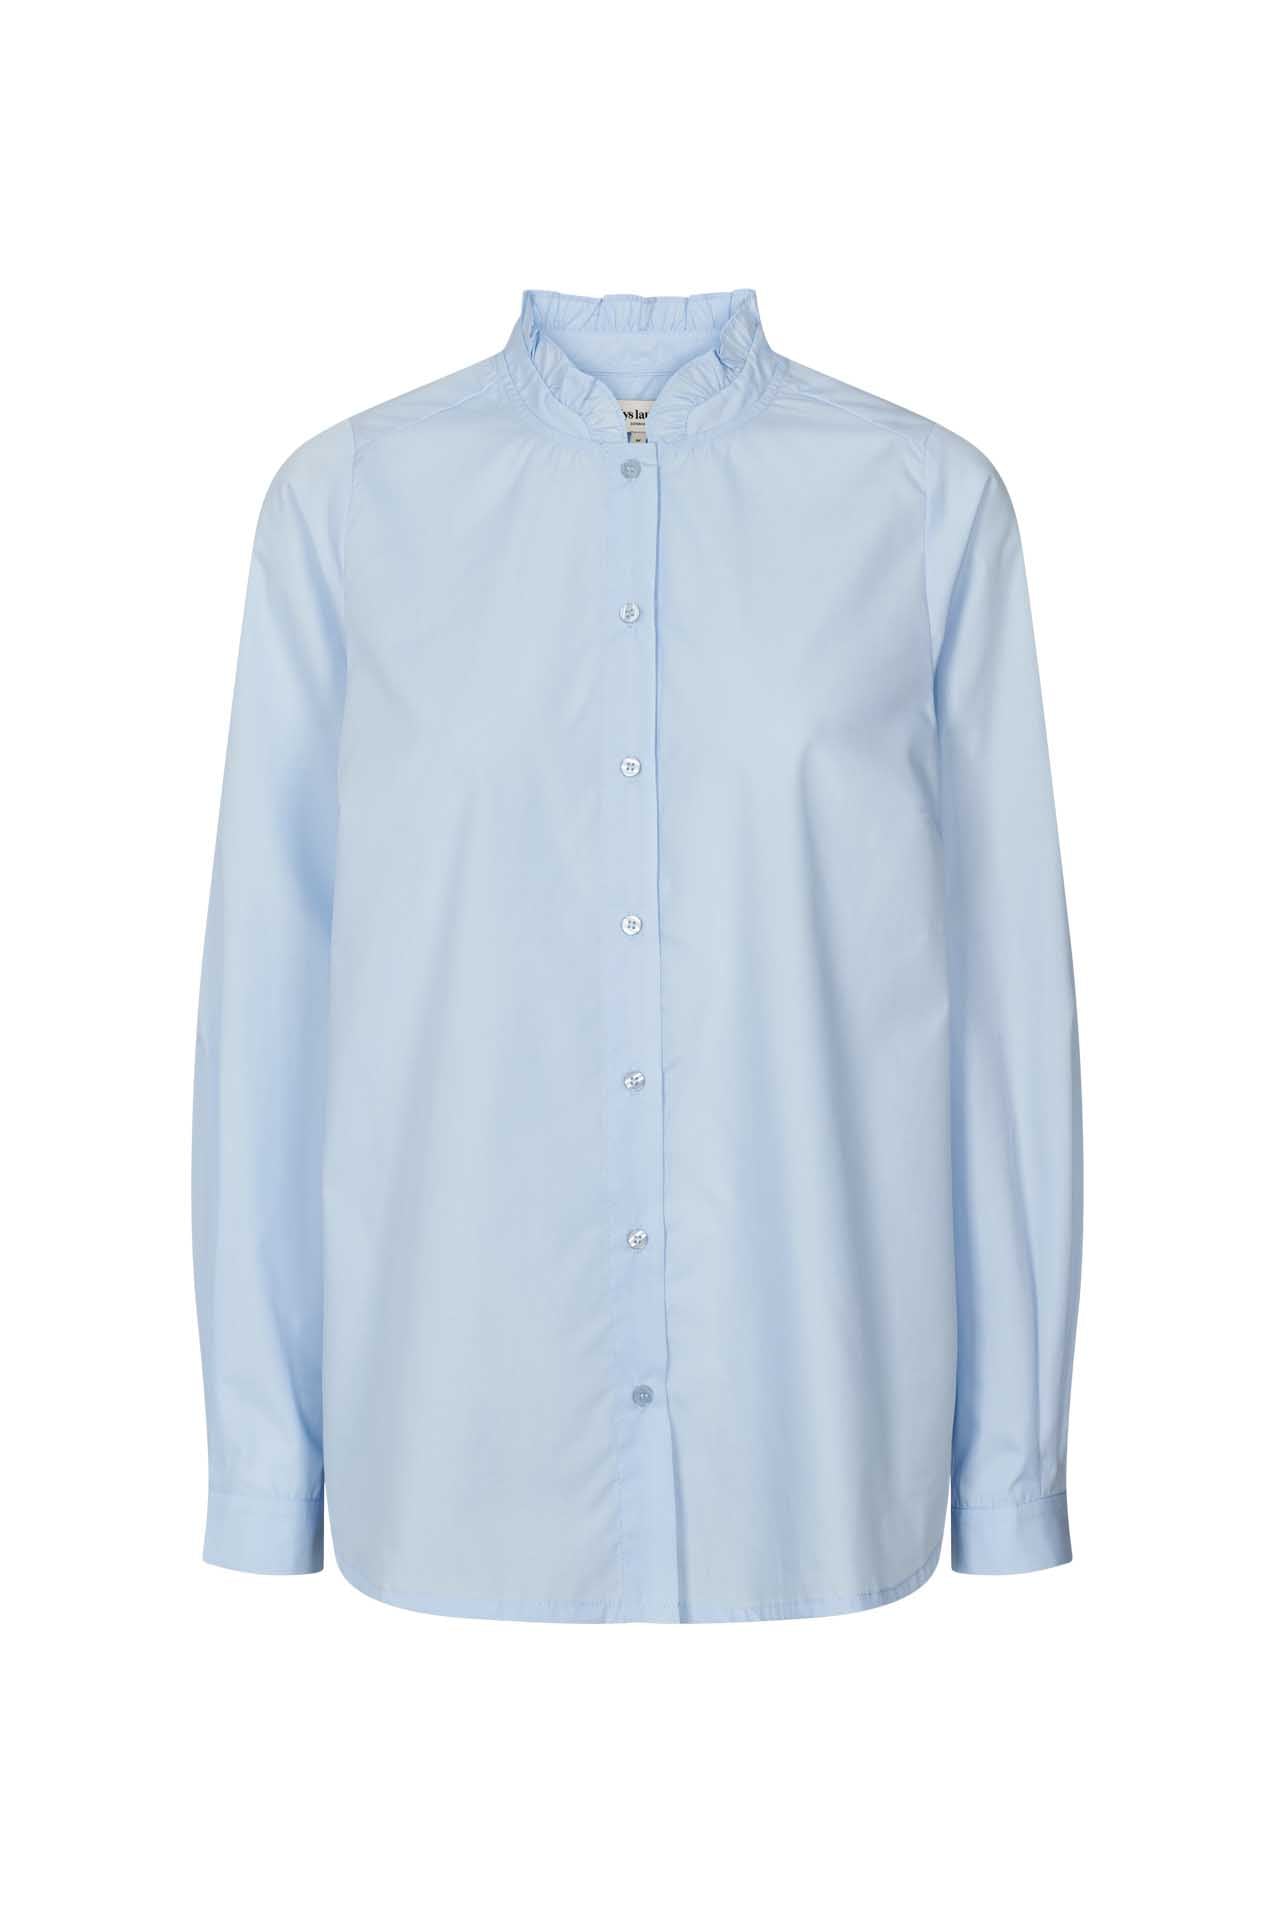 Lollys Laundry Hobart Shirt - Light Blue